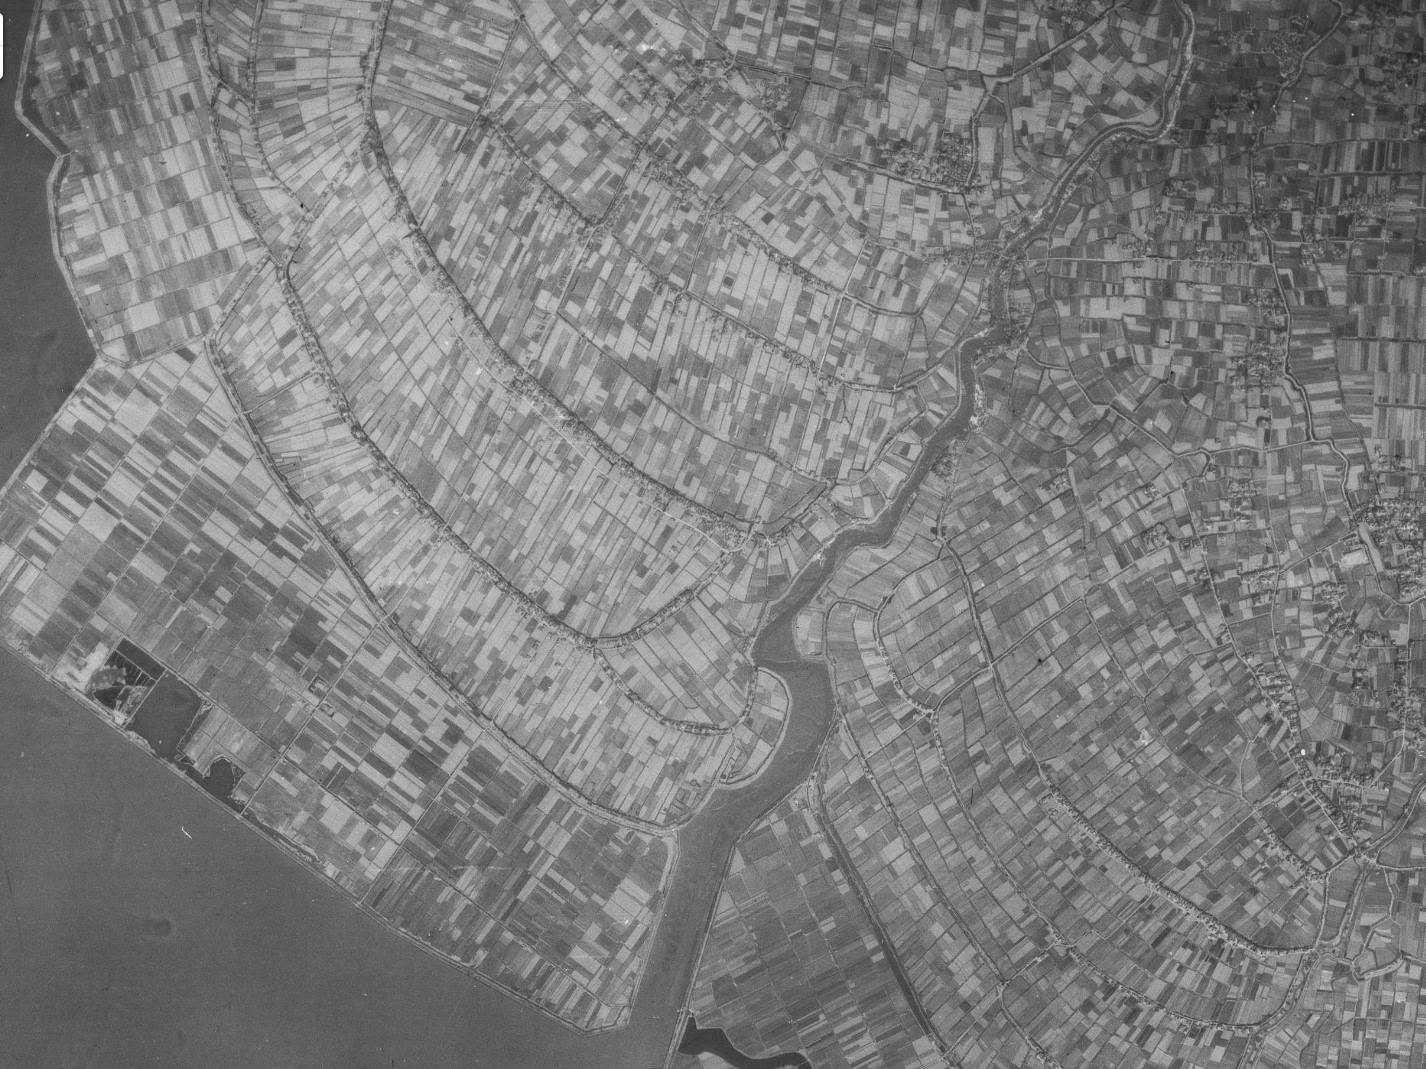 有明海干拓地（大浜町・有明町付近）、昭和22年撮影空中写真（国土地理院Webサイトより、USA-M198-2-22〔部分〕） の画像。